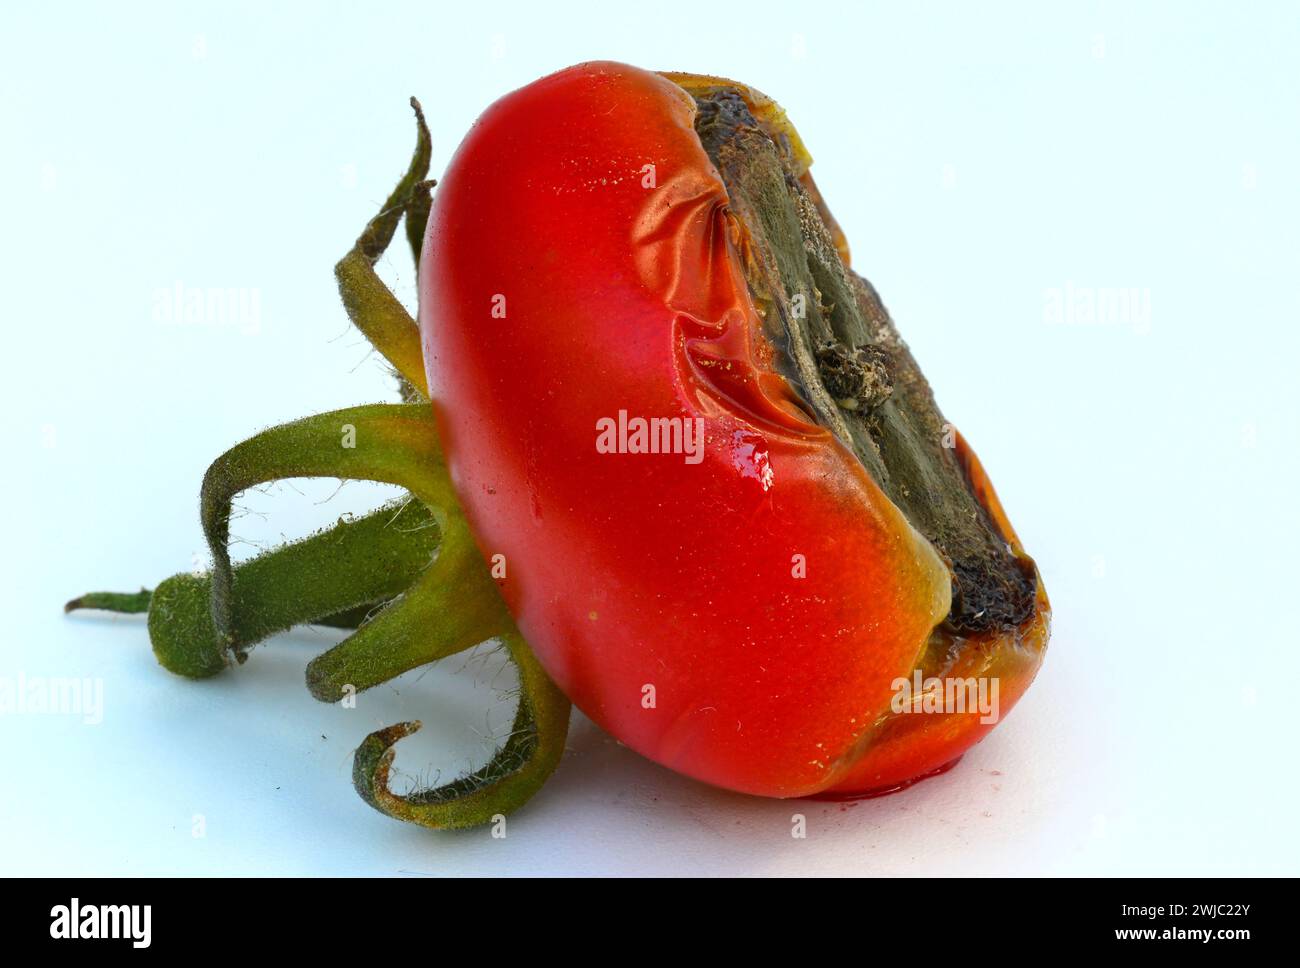 Fruta del tomate afectada por el extremo de la fruta ennegrecida - debido a la pudrición del extremo de la flor, que indica una deficiencia de calcio. Foto de stock